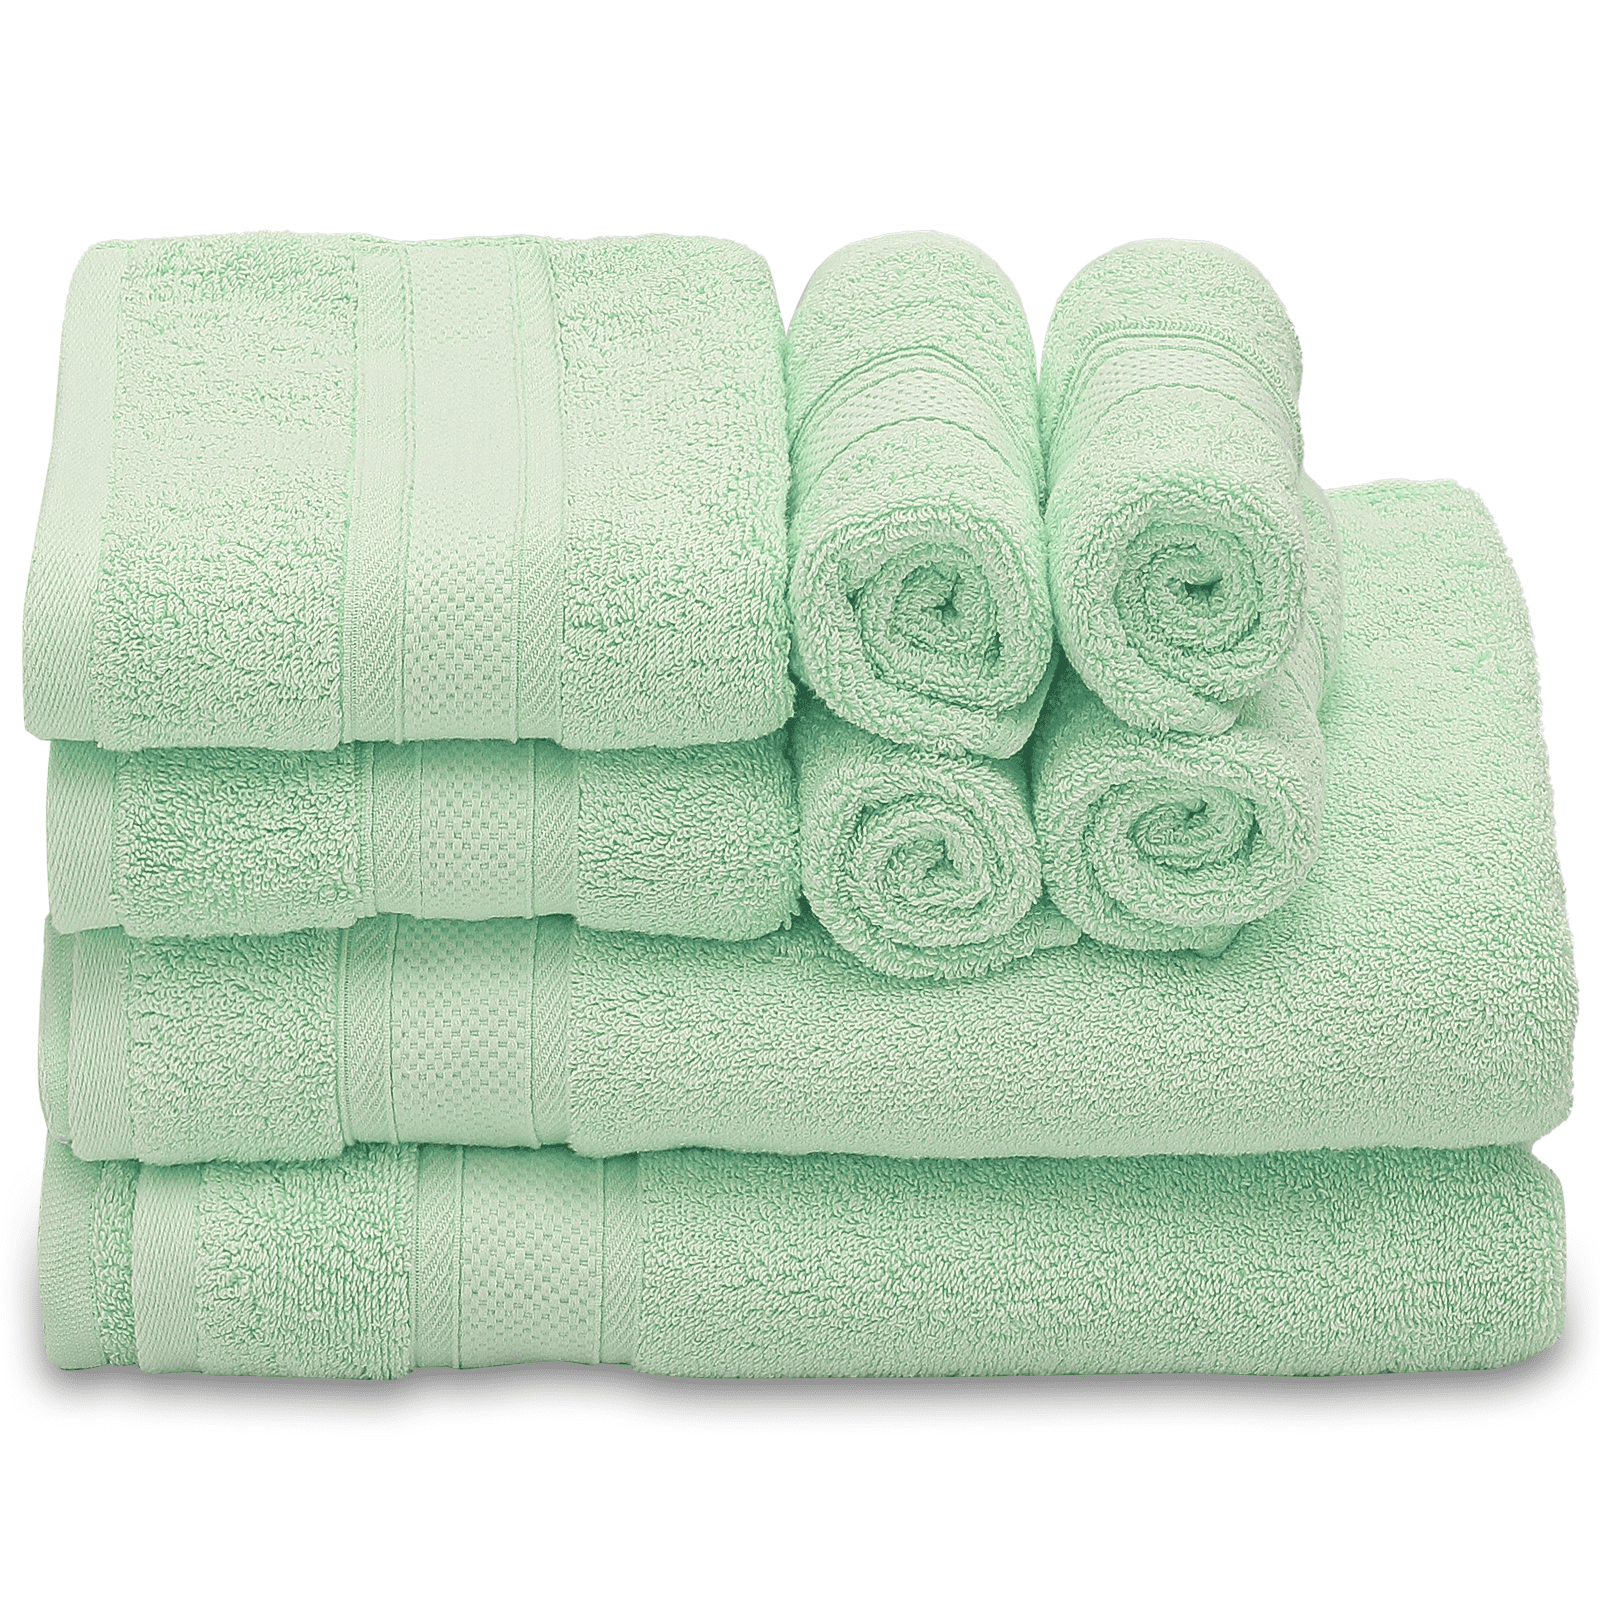 27X54-Premium Plus White Bath towels 100% Cotton